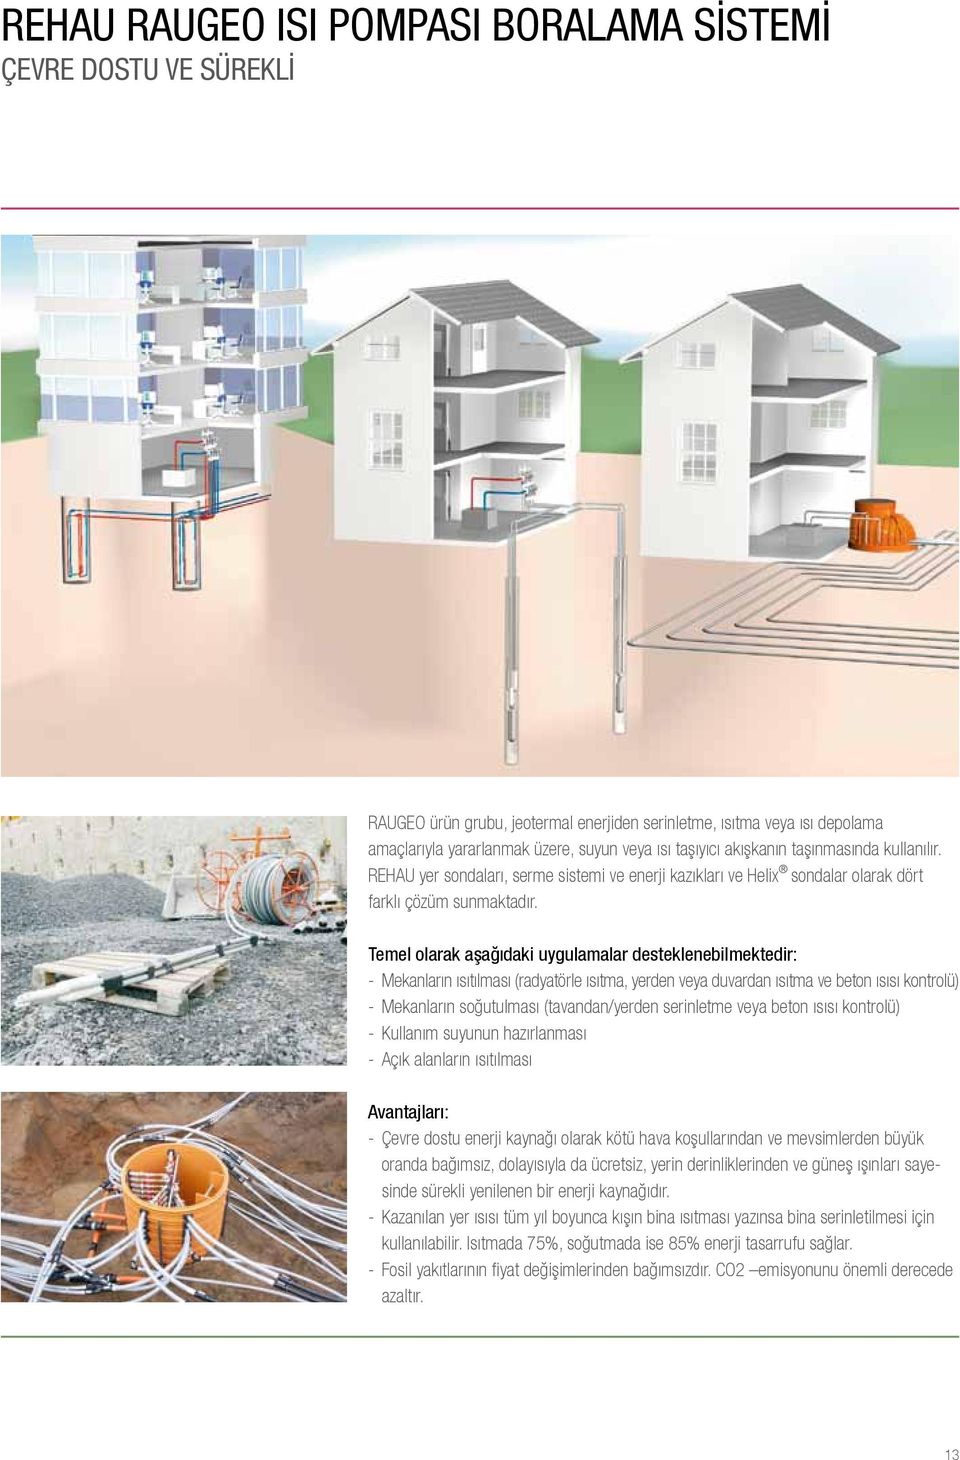 Temel olarak aşağıdaki uygulamalar desteklenebilmektedir: - Mekanların ısıtılması (radyatörle ısıtma, yerden veya duvardan ısıtma ve beton ısısı kontrolü) - Mekanların soğutulması (tavandan/yerden